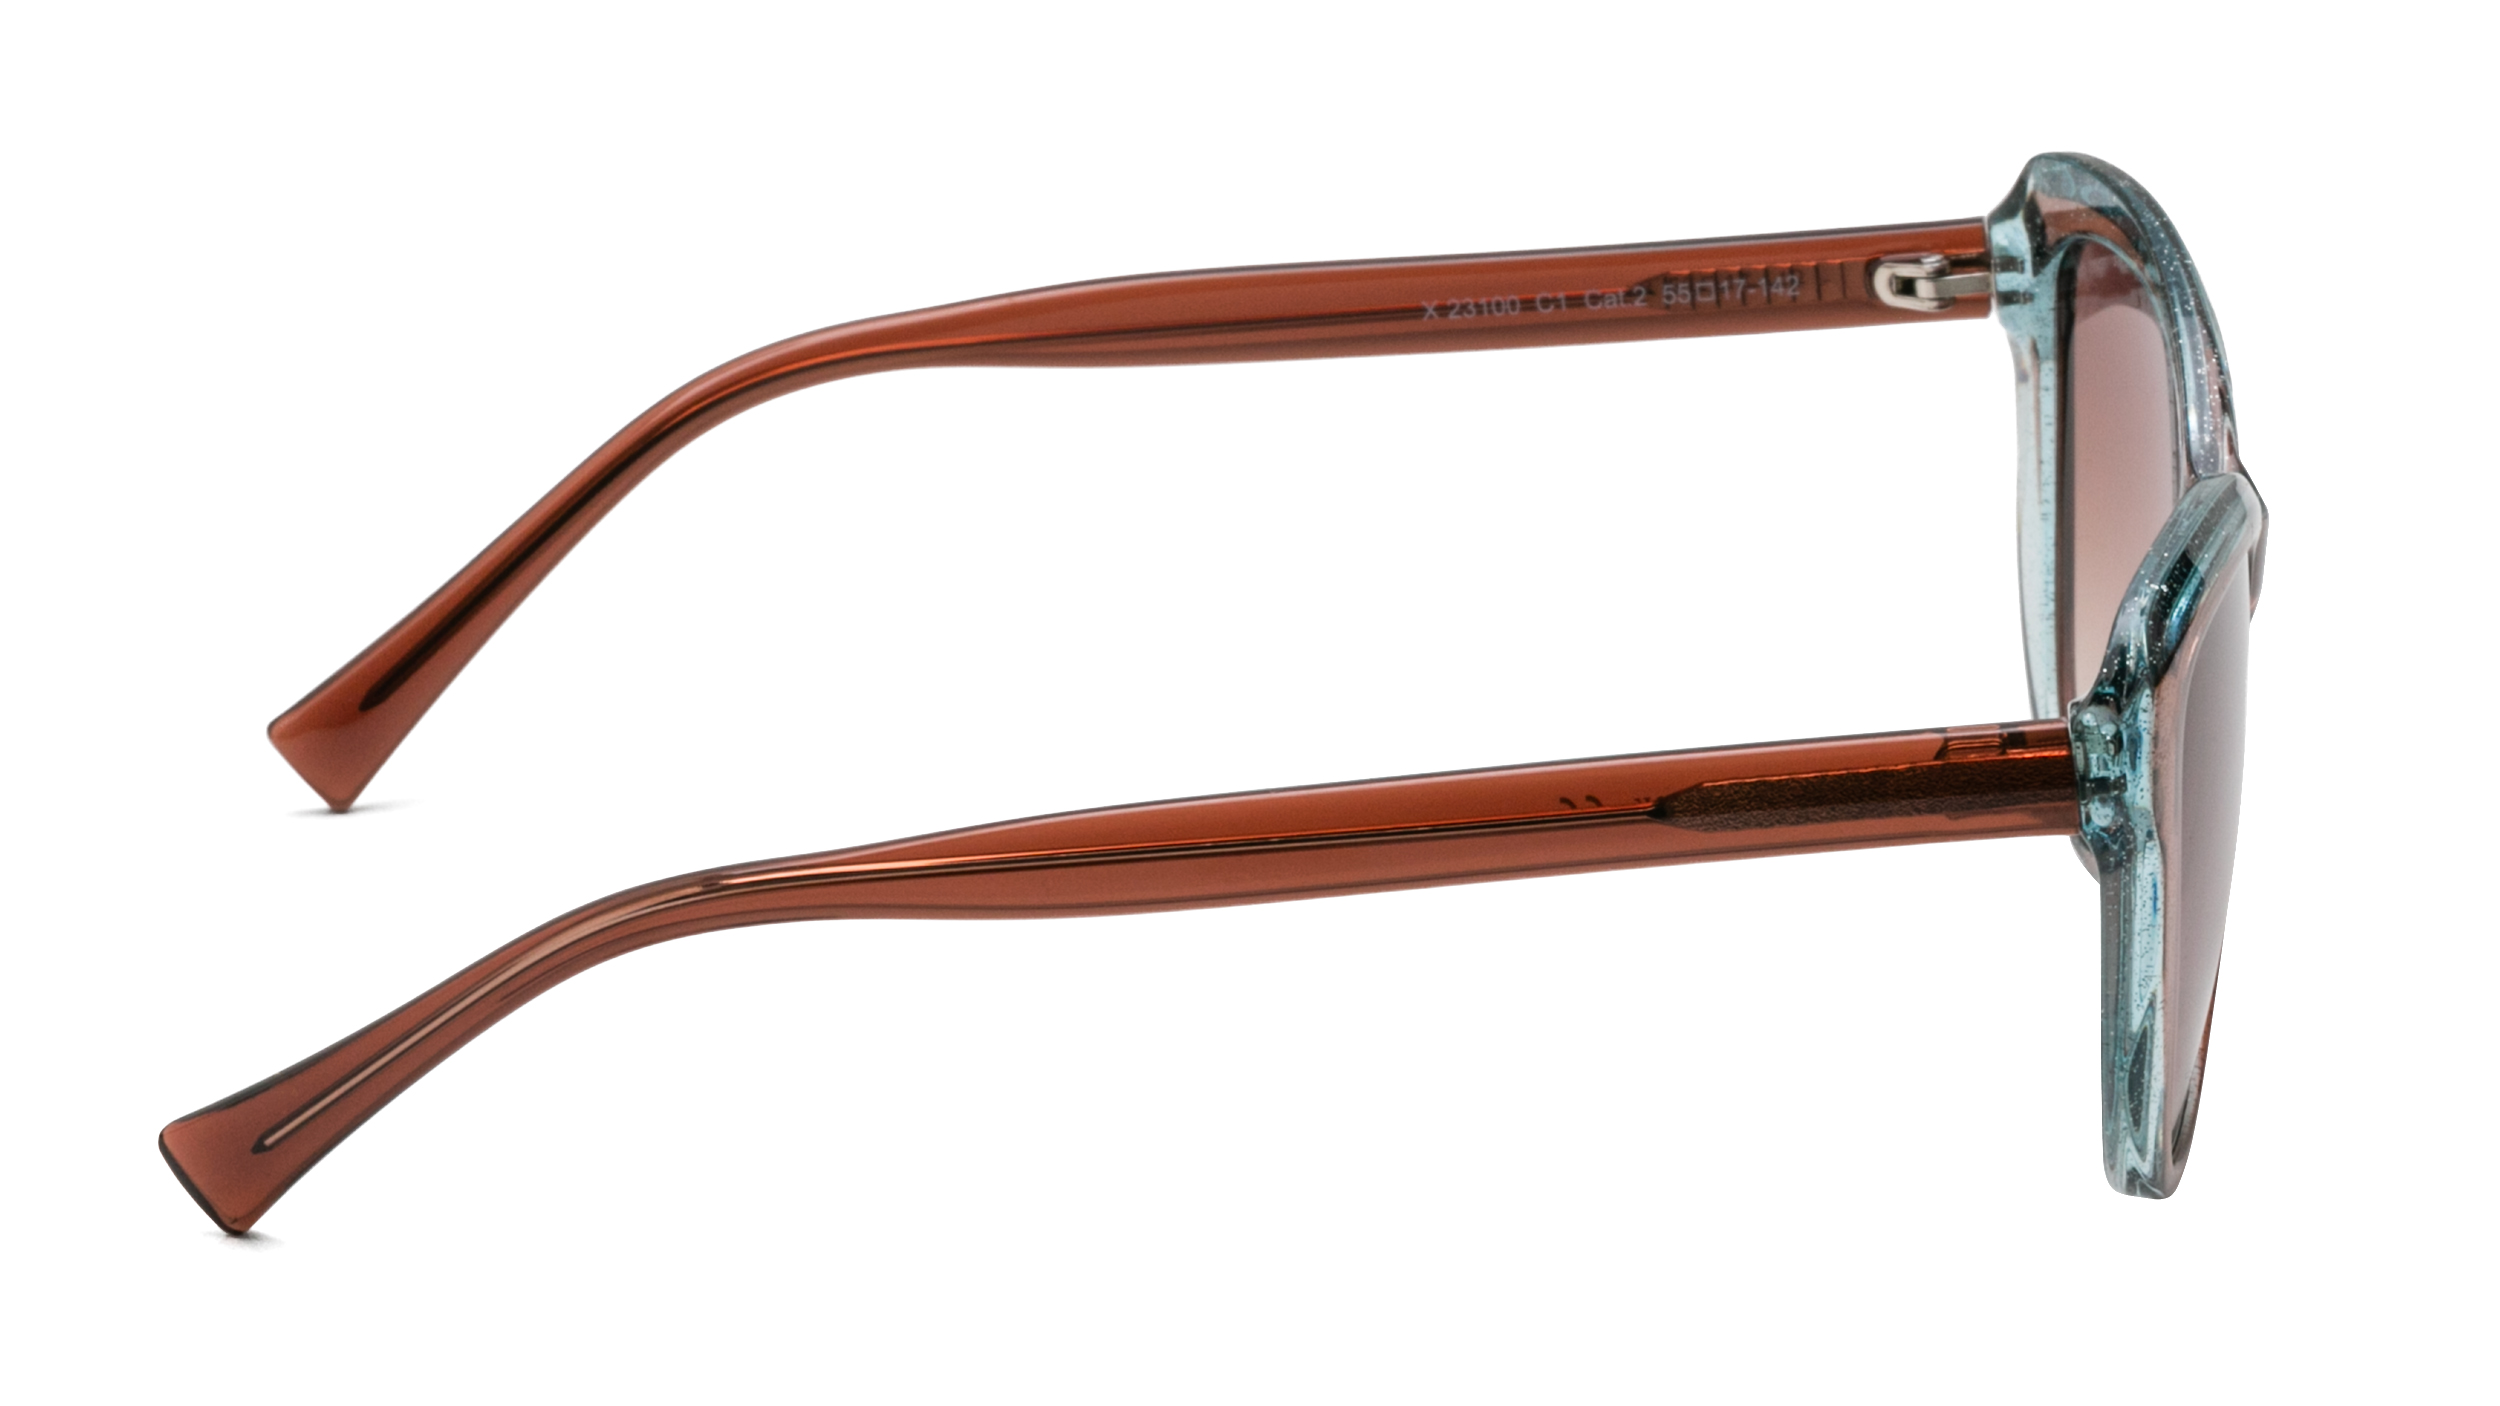 Солнцезащитные очки Happy Look X 23100-C1 - купить в интернет-магазине и салонах оптики «Счастливый взгляд»